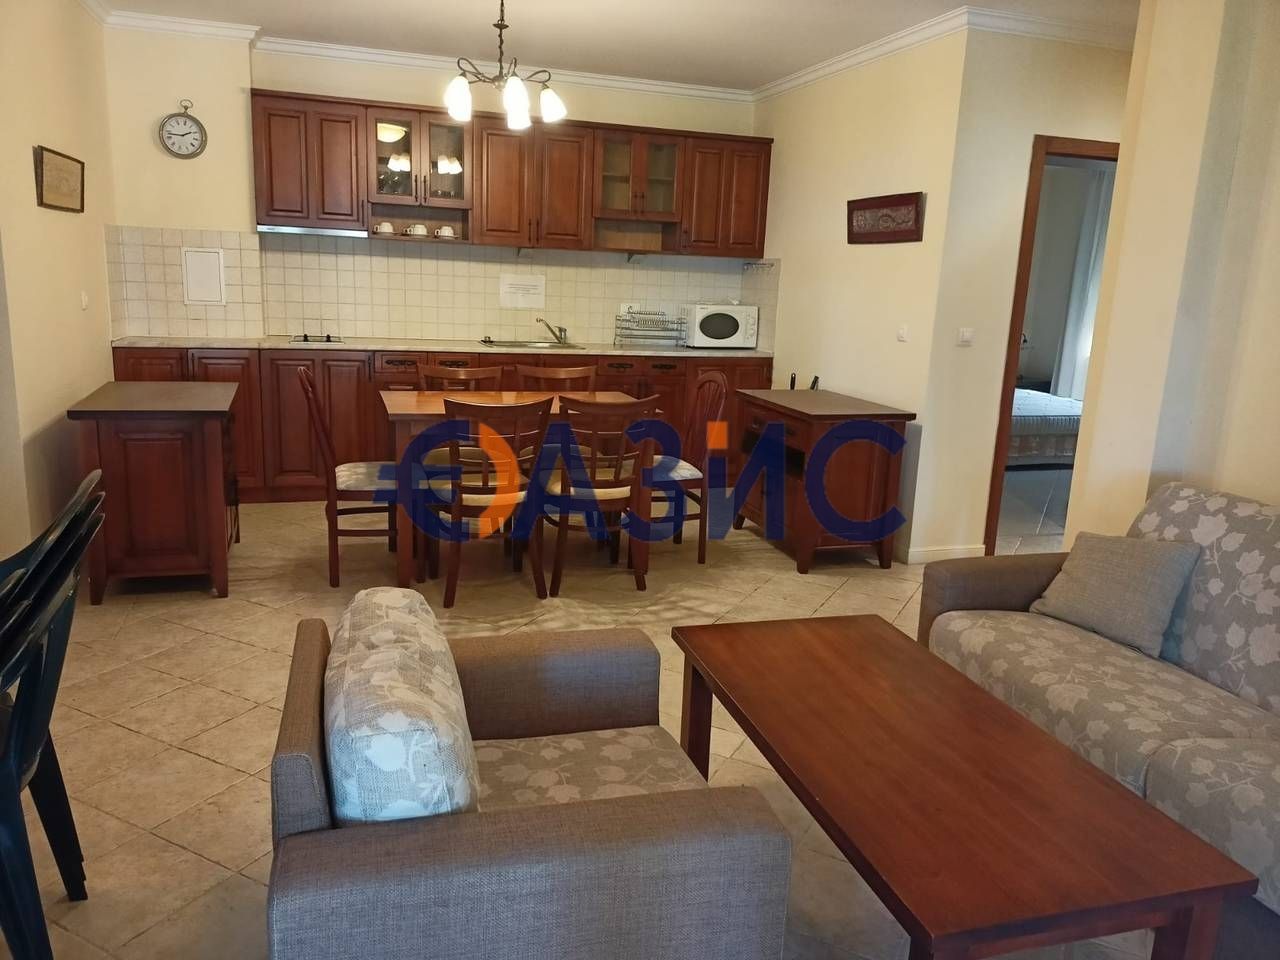 Apartment in Sozopol, Bulgaria, 110 sq.m - picture 1